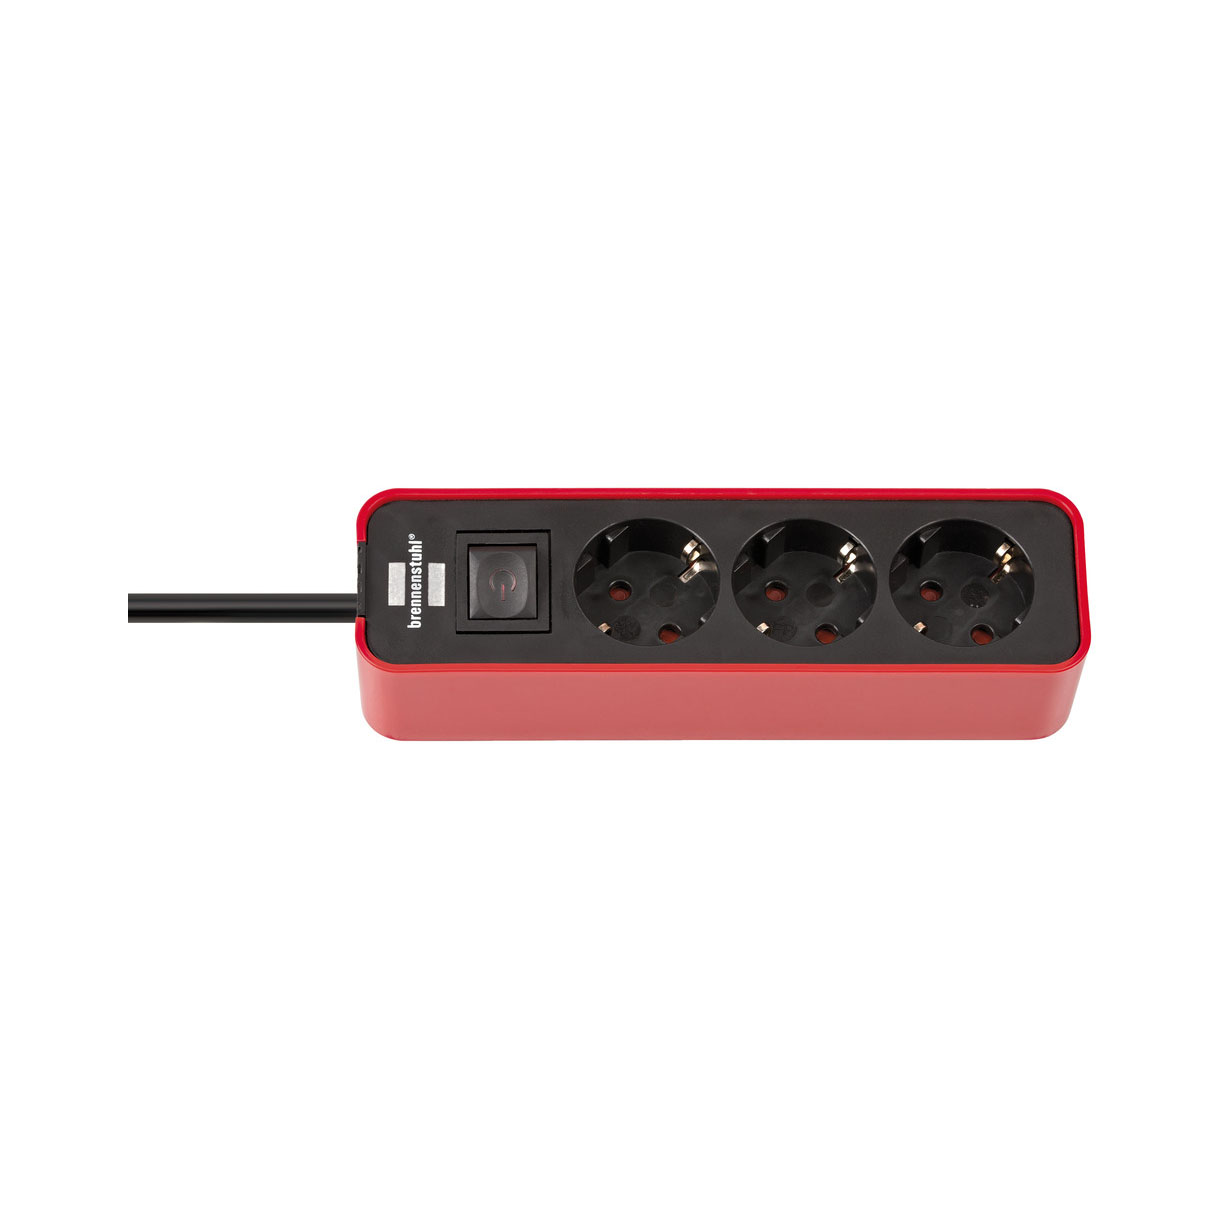 Удлинитель Brennenstuhl Ecolor с переключателем 3 розетки кабель 1,5 м H05VV-F 3G1,5 черно-красный 1153230070